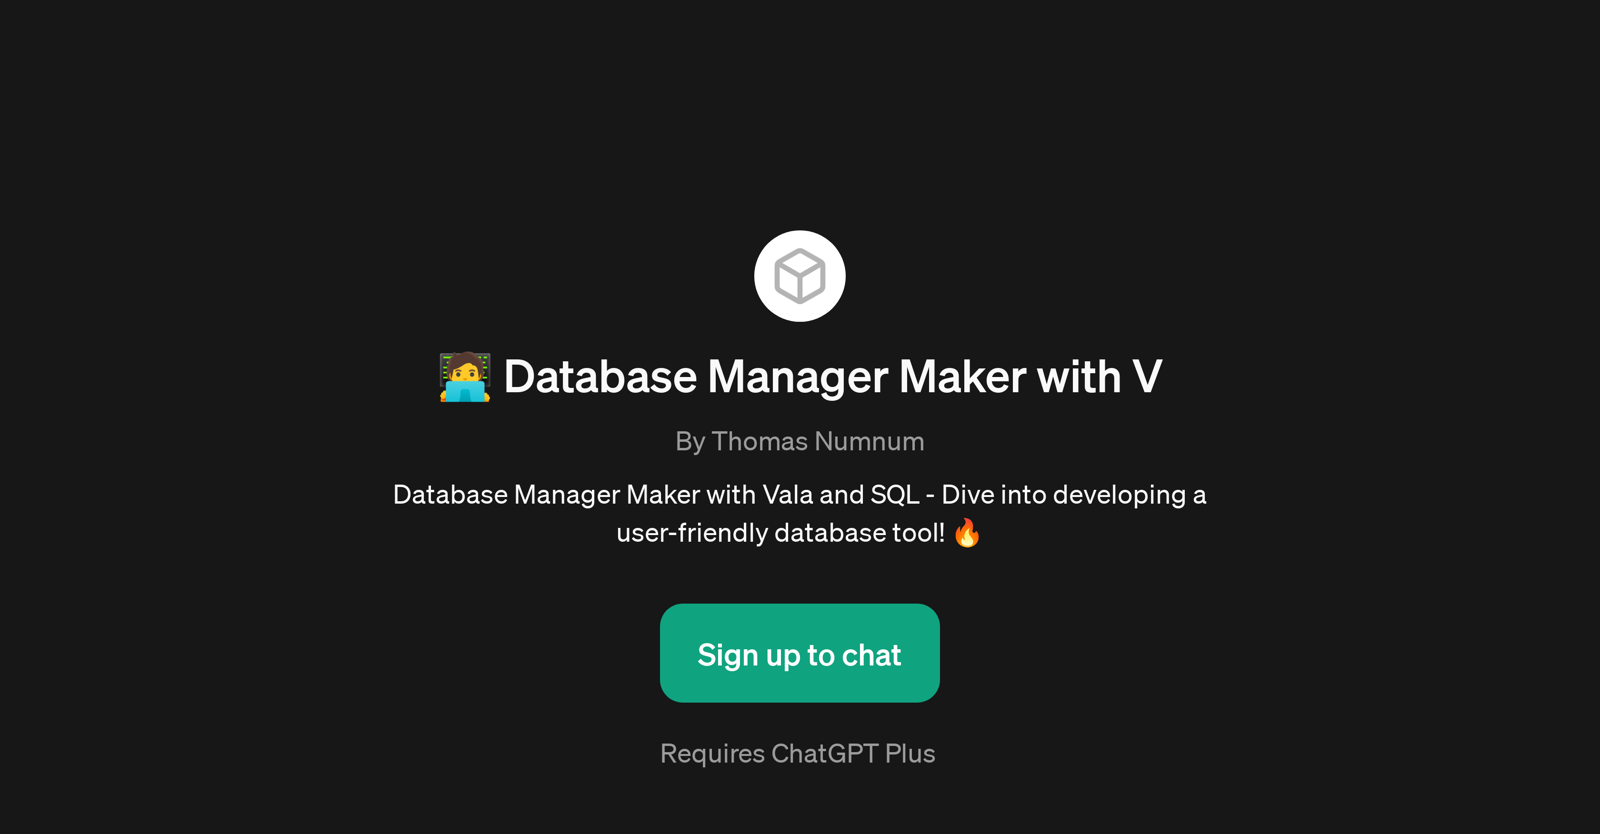 Database Manager Maker with V website